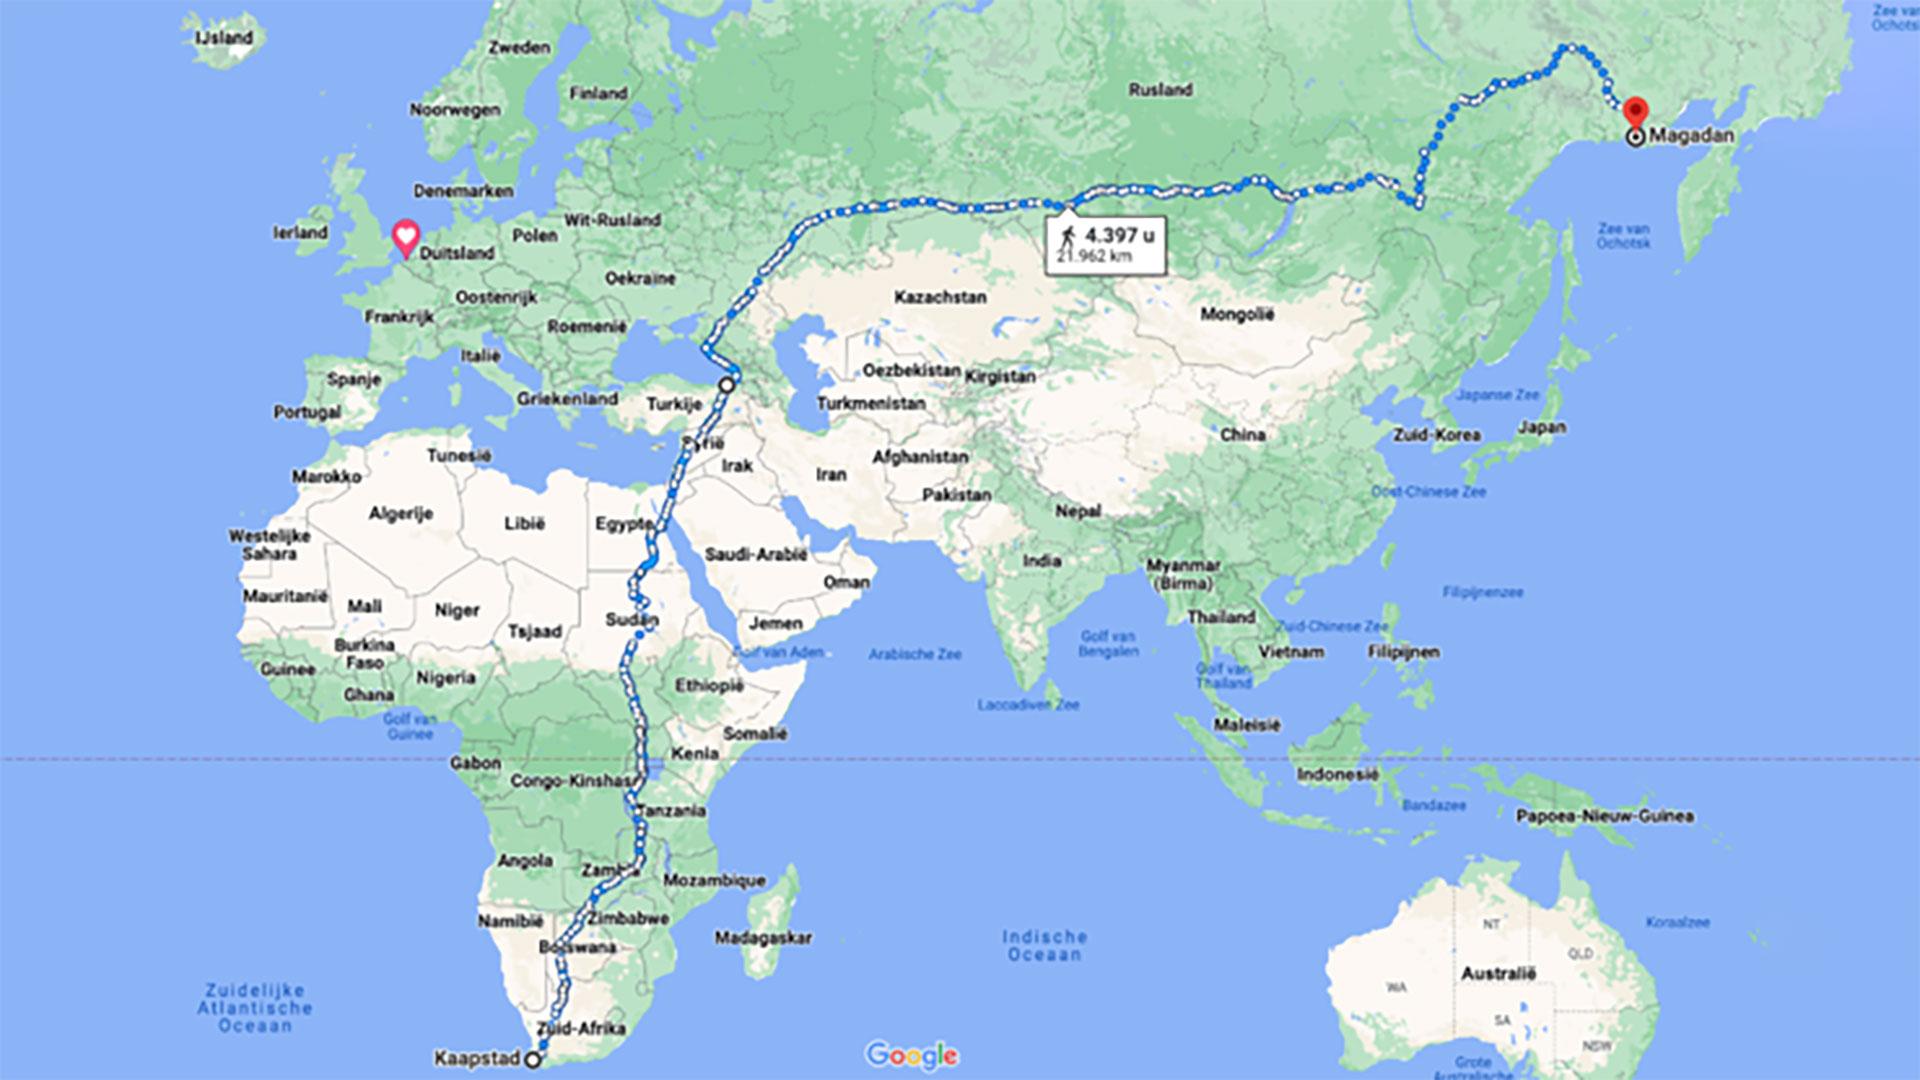 langste wandelroute ter wereld